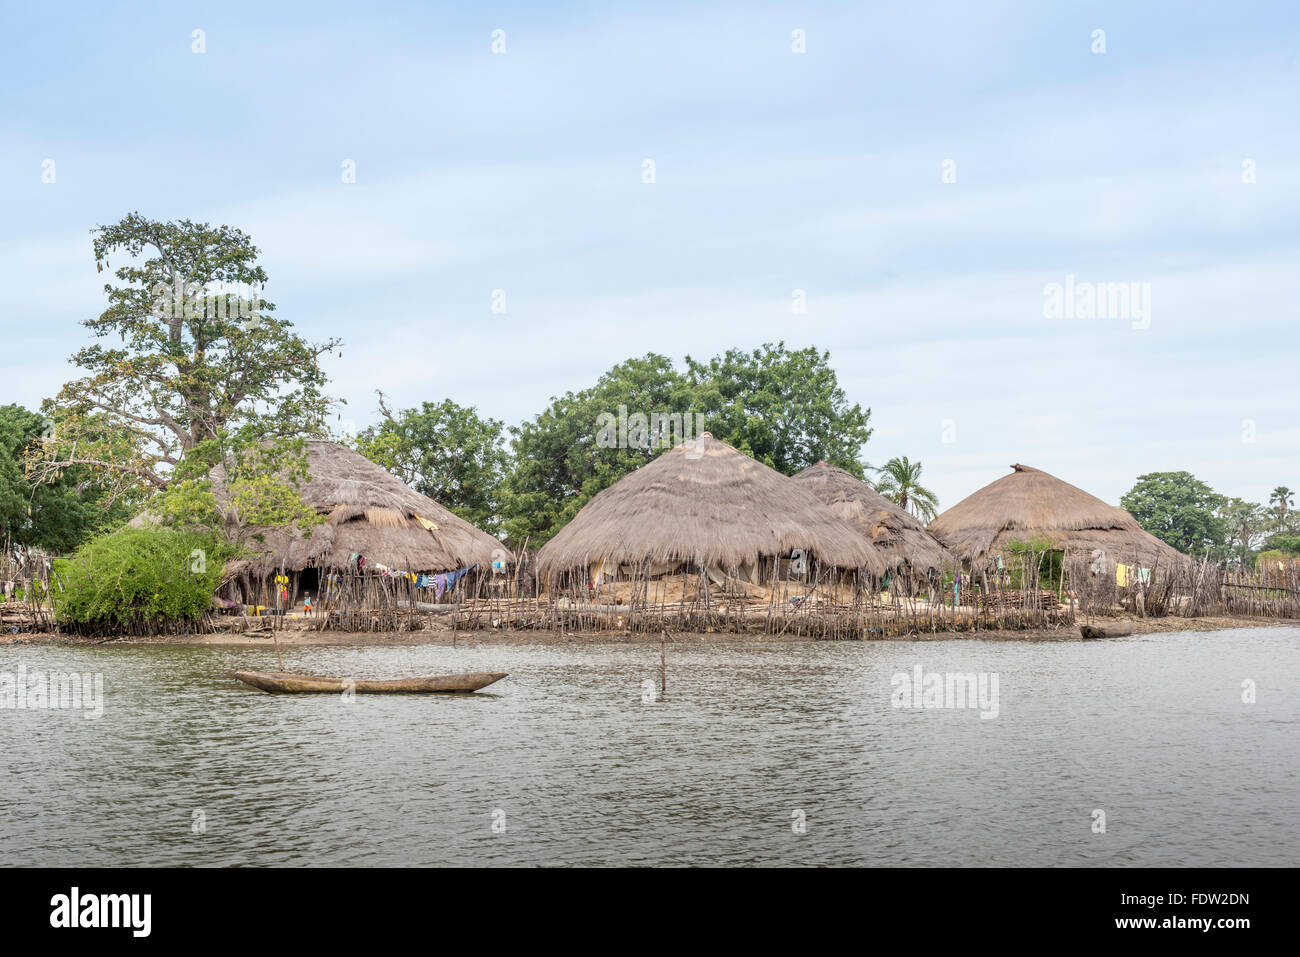 Le village d'Elia, profonde dans les mangroves du nord de la Guinée Bissau Banque D'Images